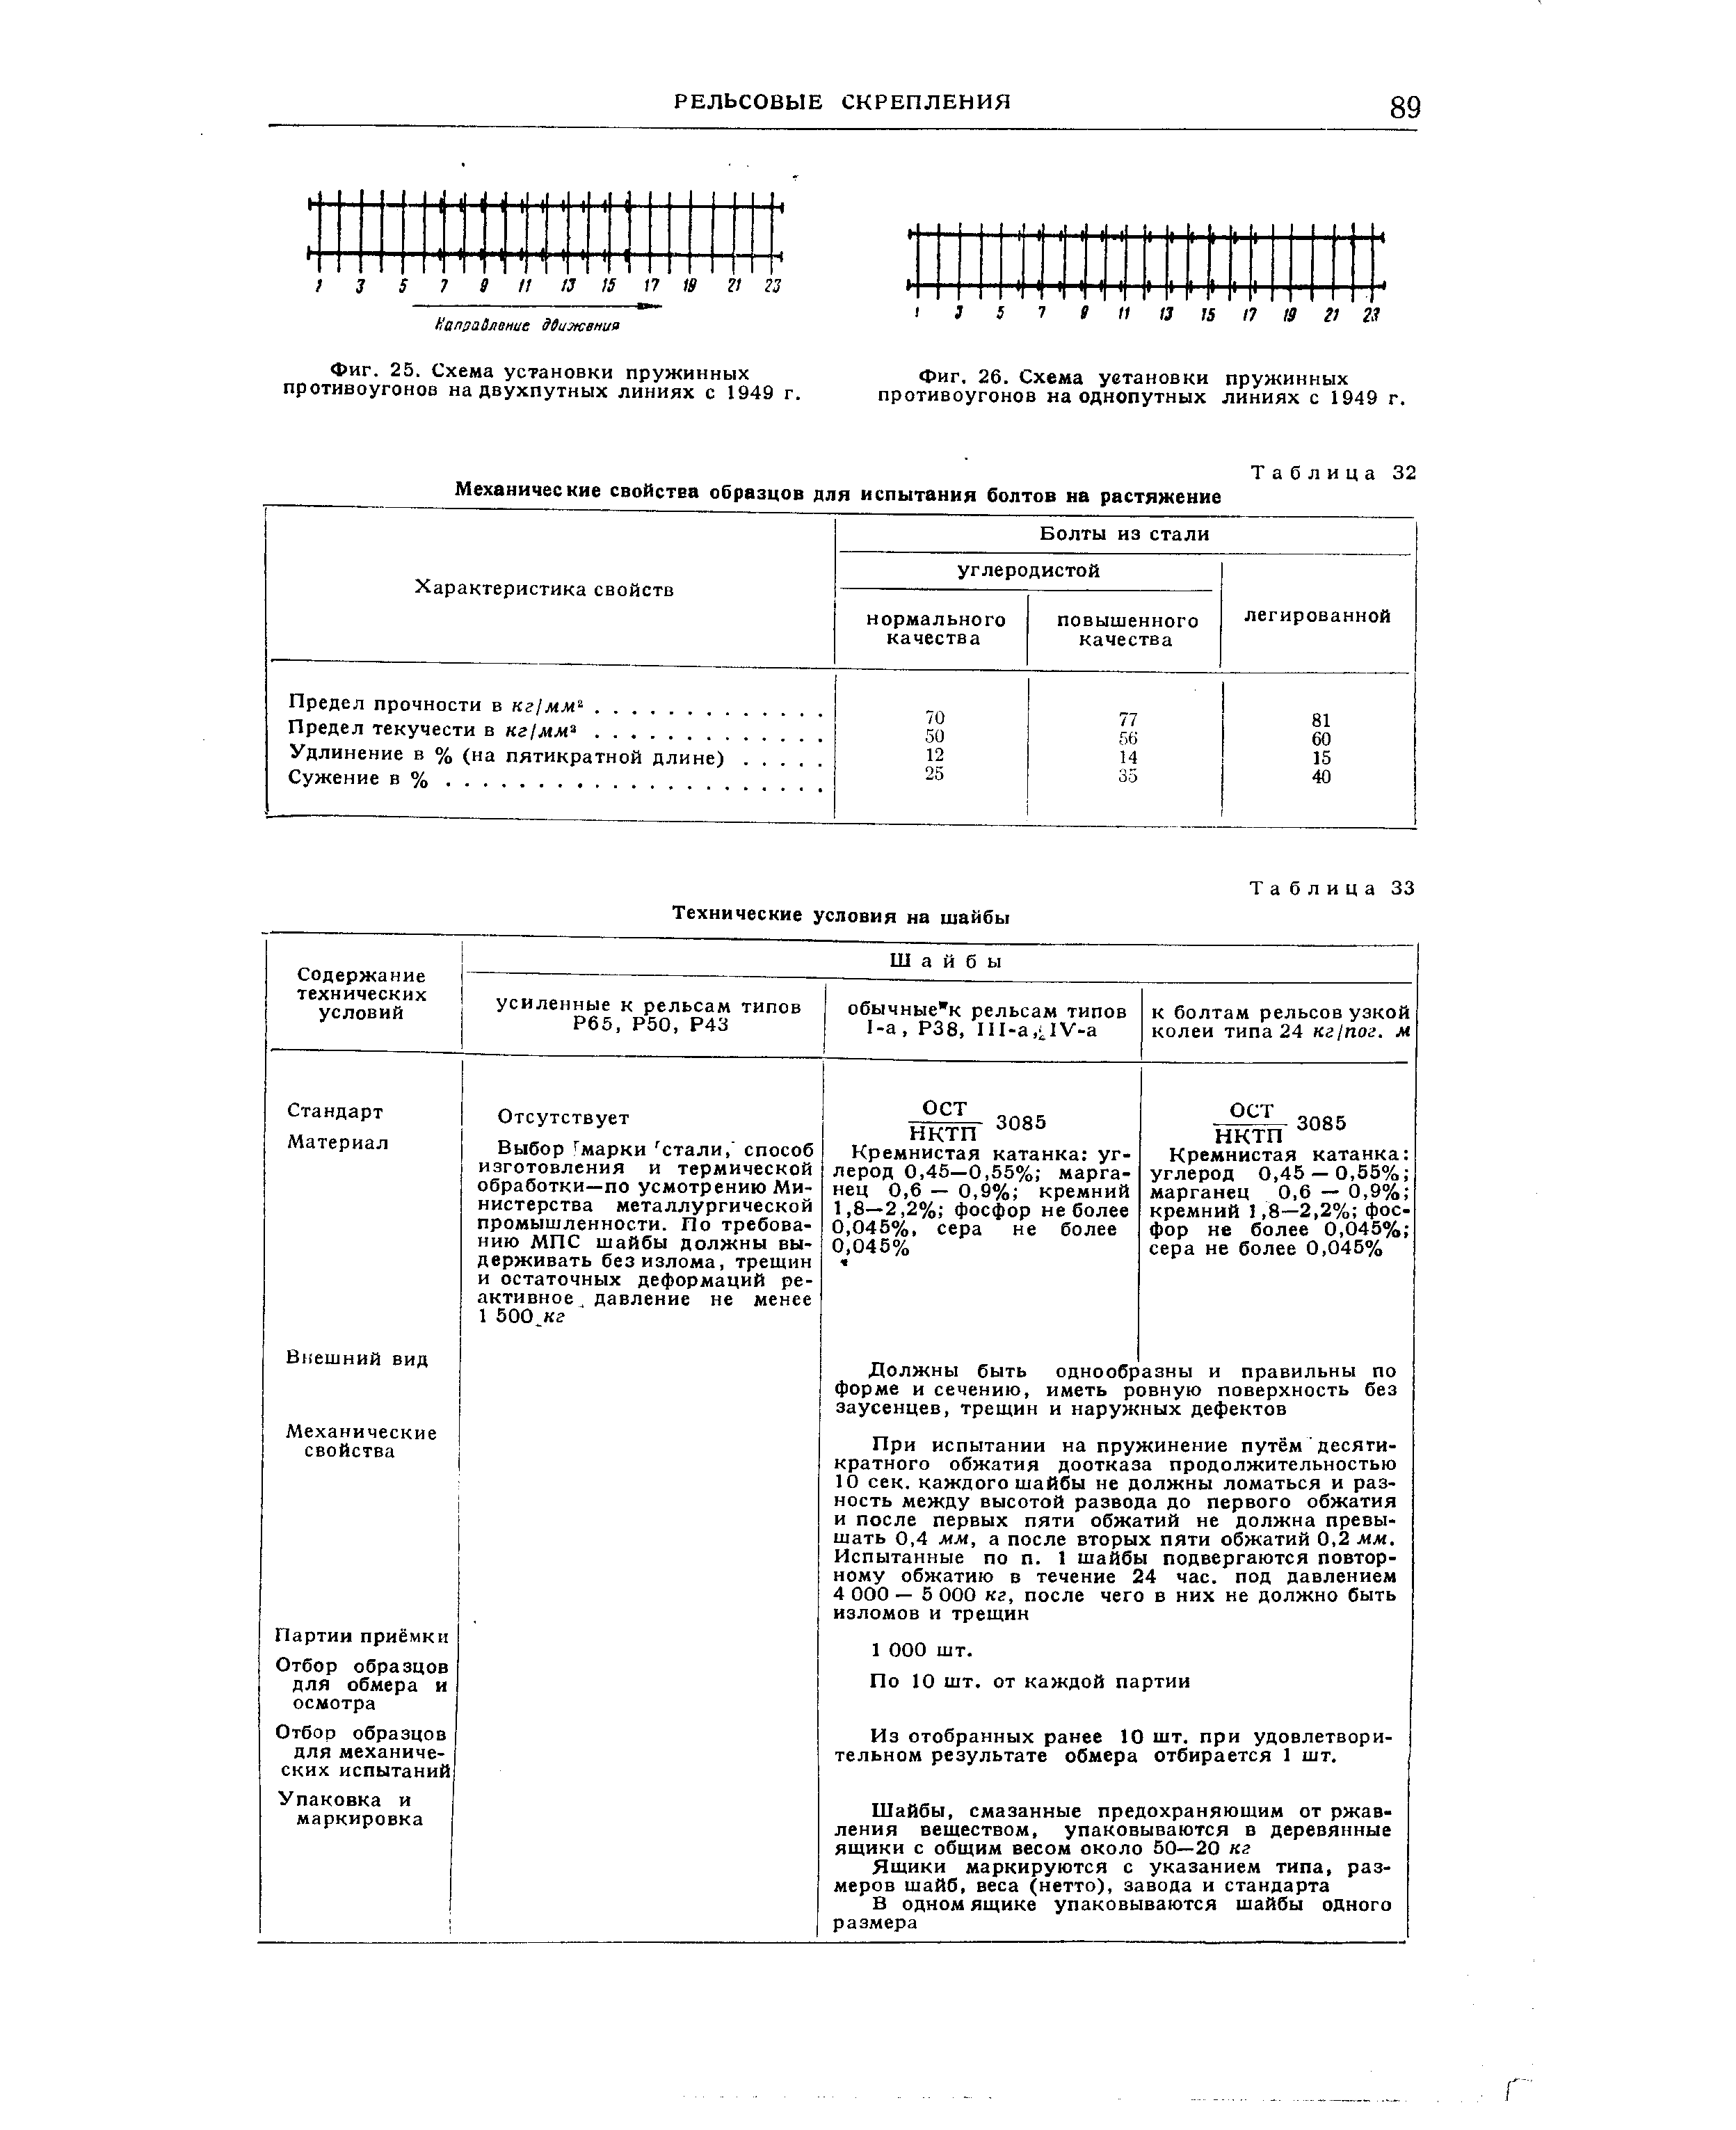 Схема уетановки пружинных противоугонов на однопутных линиях с 1949 г.
